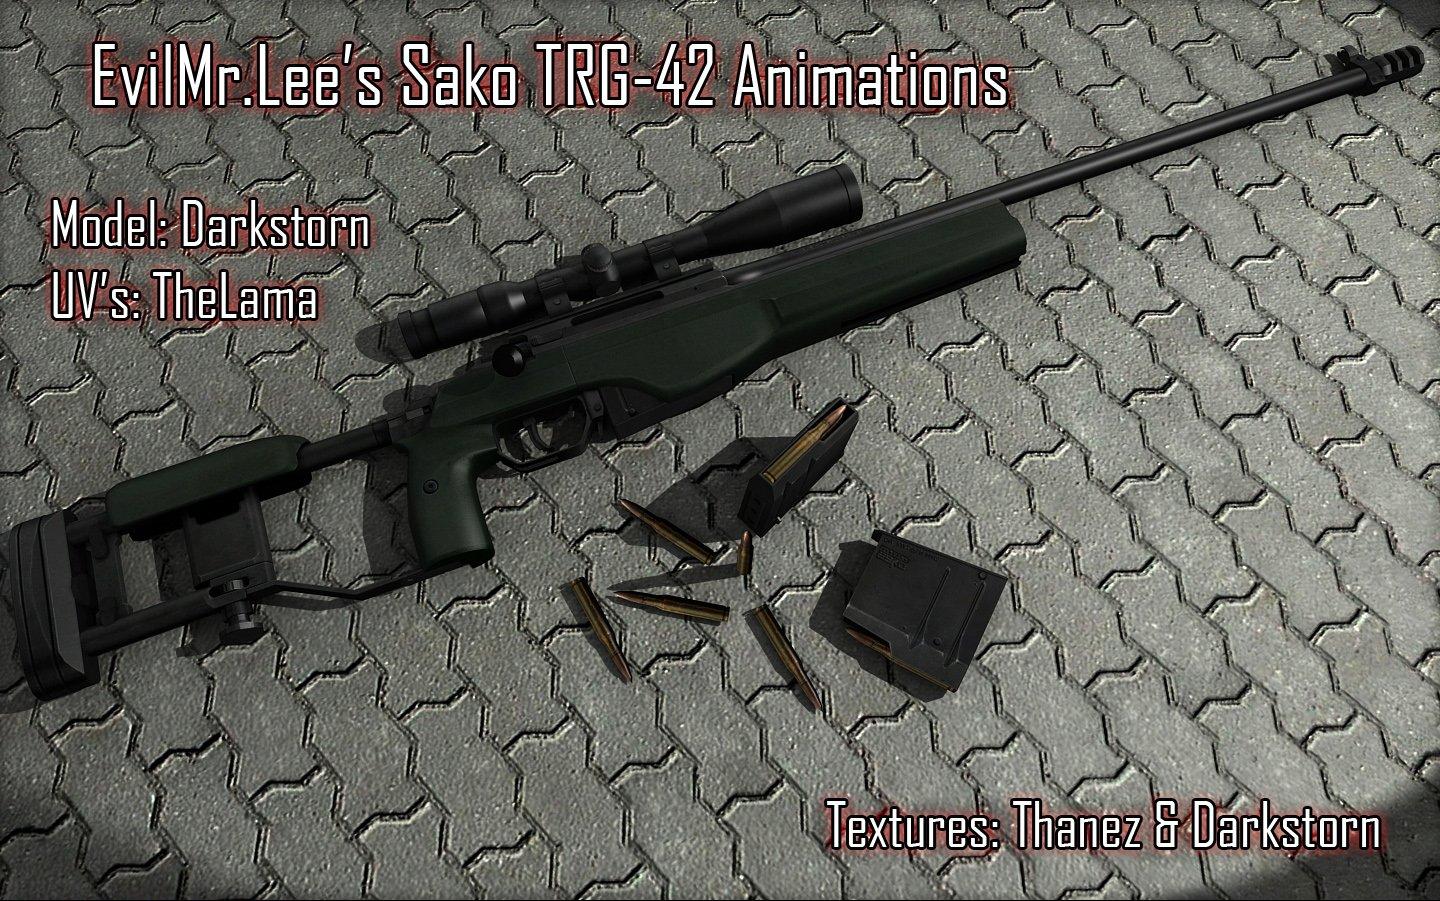 AWP - Новая снайперка (Sako TRG-42 Animations)